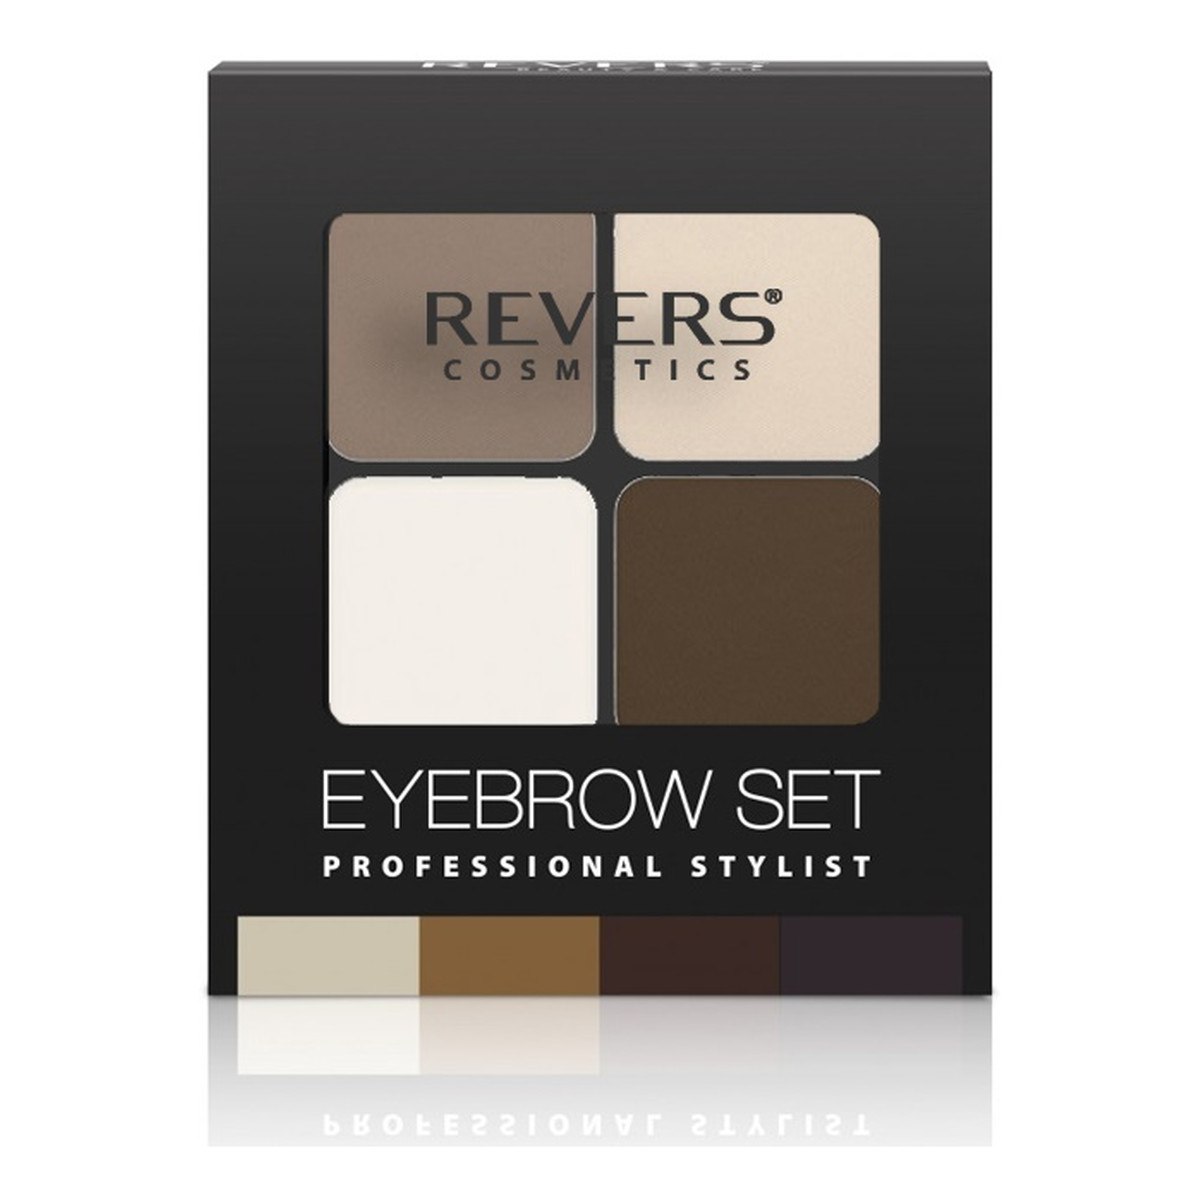 Revers Eyebrow Set Professional Stylist Zestaw Do Stylizacji Brwi 18g